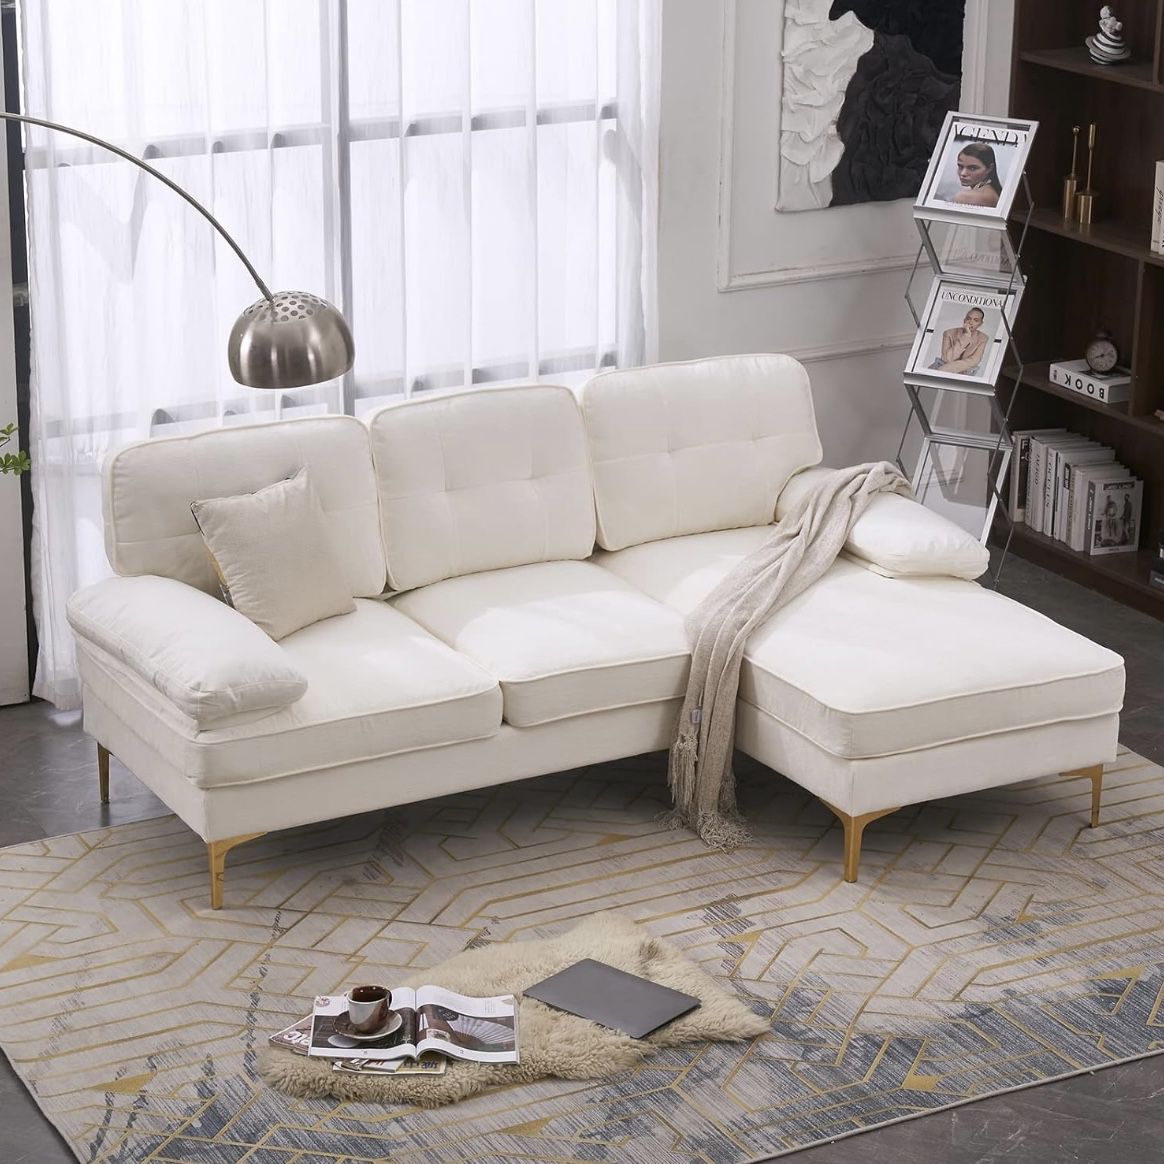 White/Cream Couch